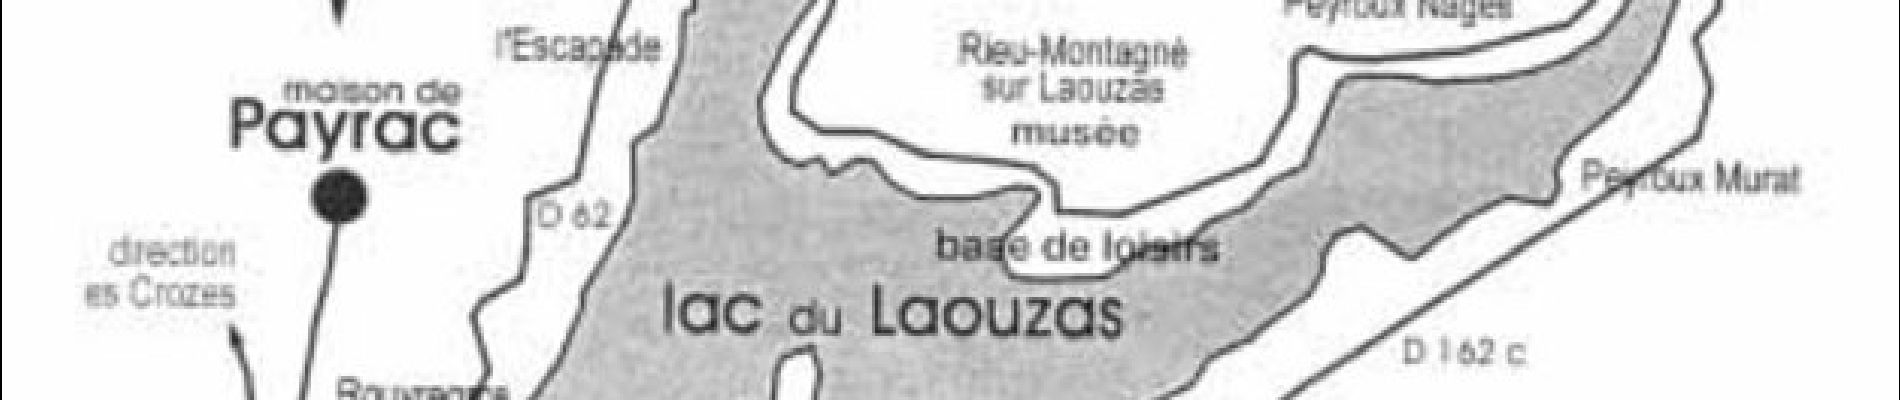 Percorso Marcia Nages - Tour du lac de Louazas - Rieu Montagné - Photo